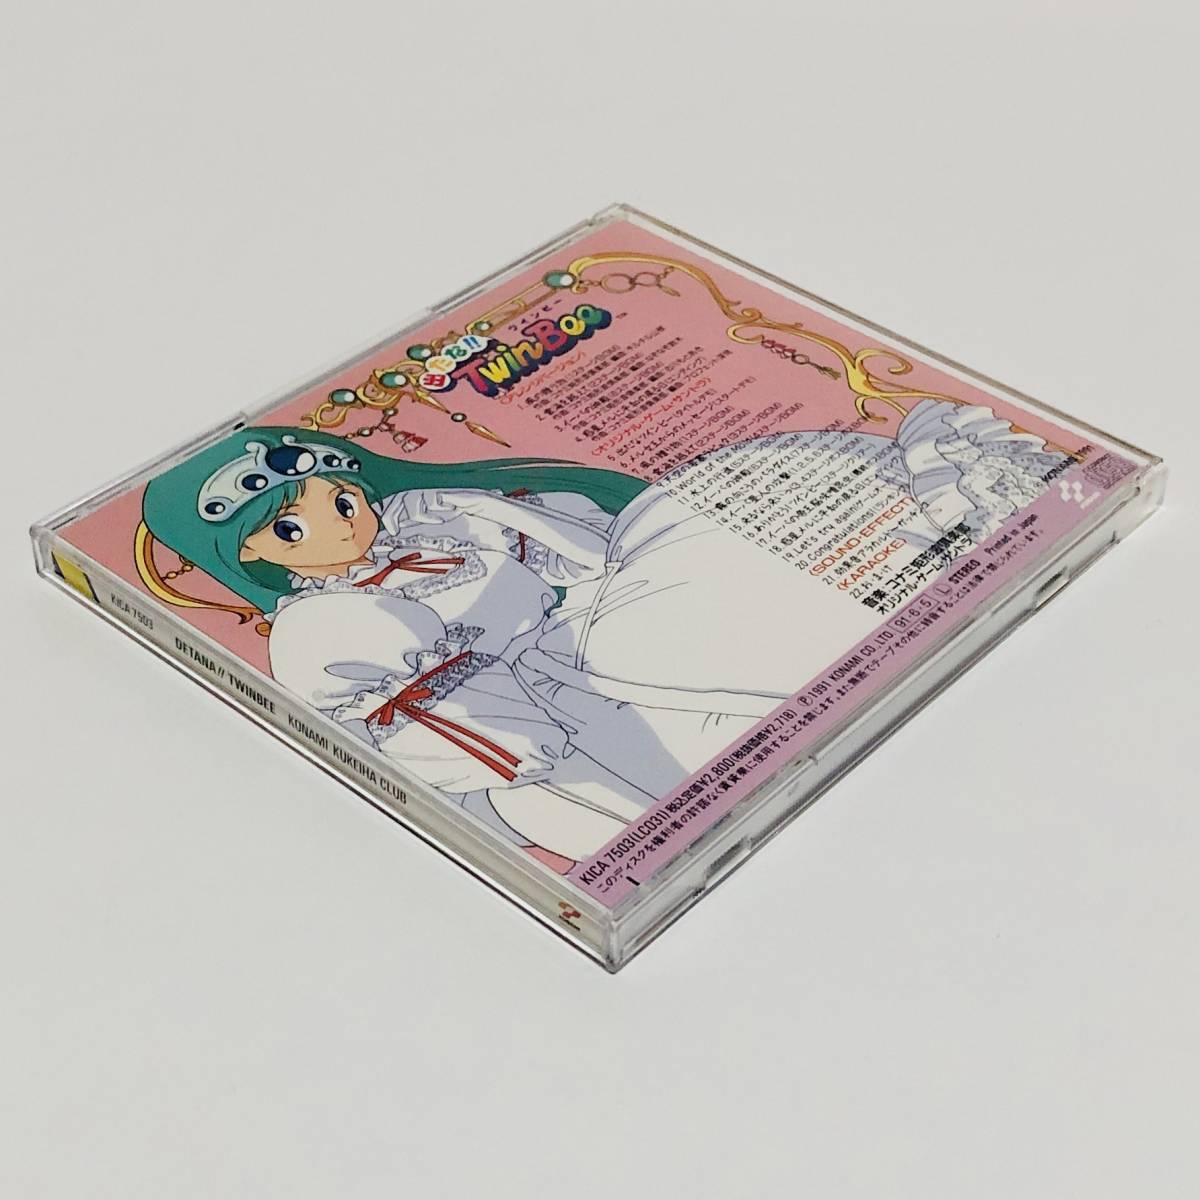 出たな!! ツインビー オリジナル・ゲーム・サントラ コナミ 矩形波倶楽部 Detana!! TwinBee Original Soundtrack CD Konami Kukeiha Club_画像6